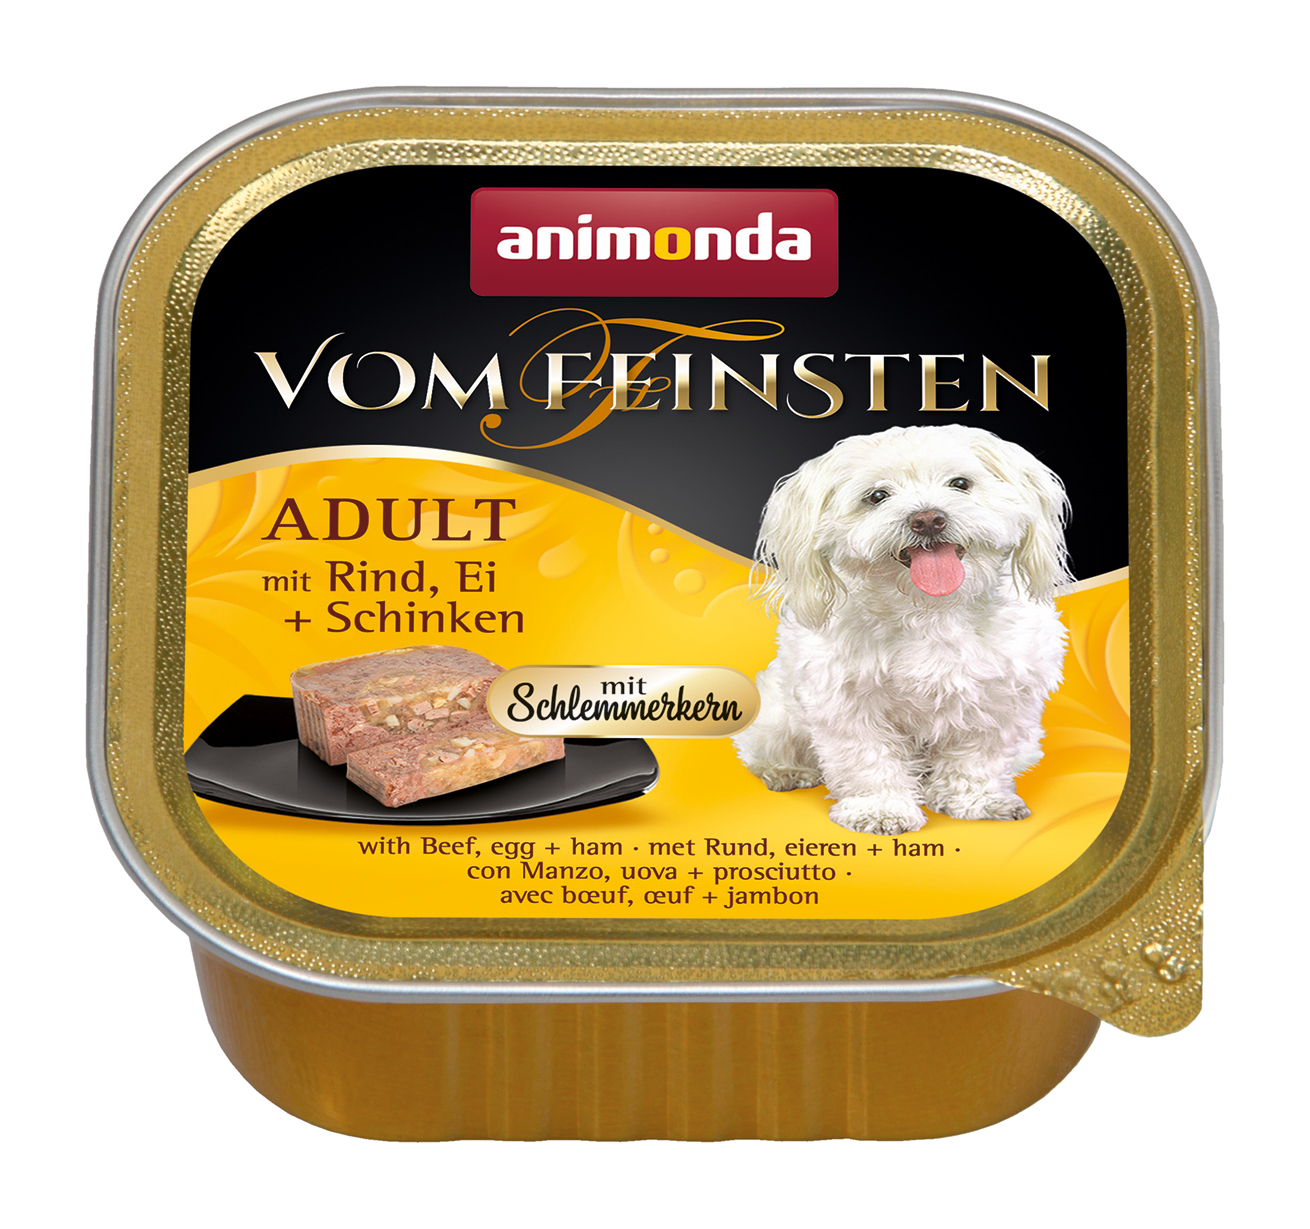 Animonda Vom Feinsten Adult 22x150g Rind, Ei & Schinken mit Schlemmerkern